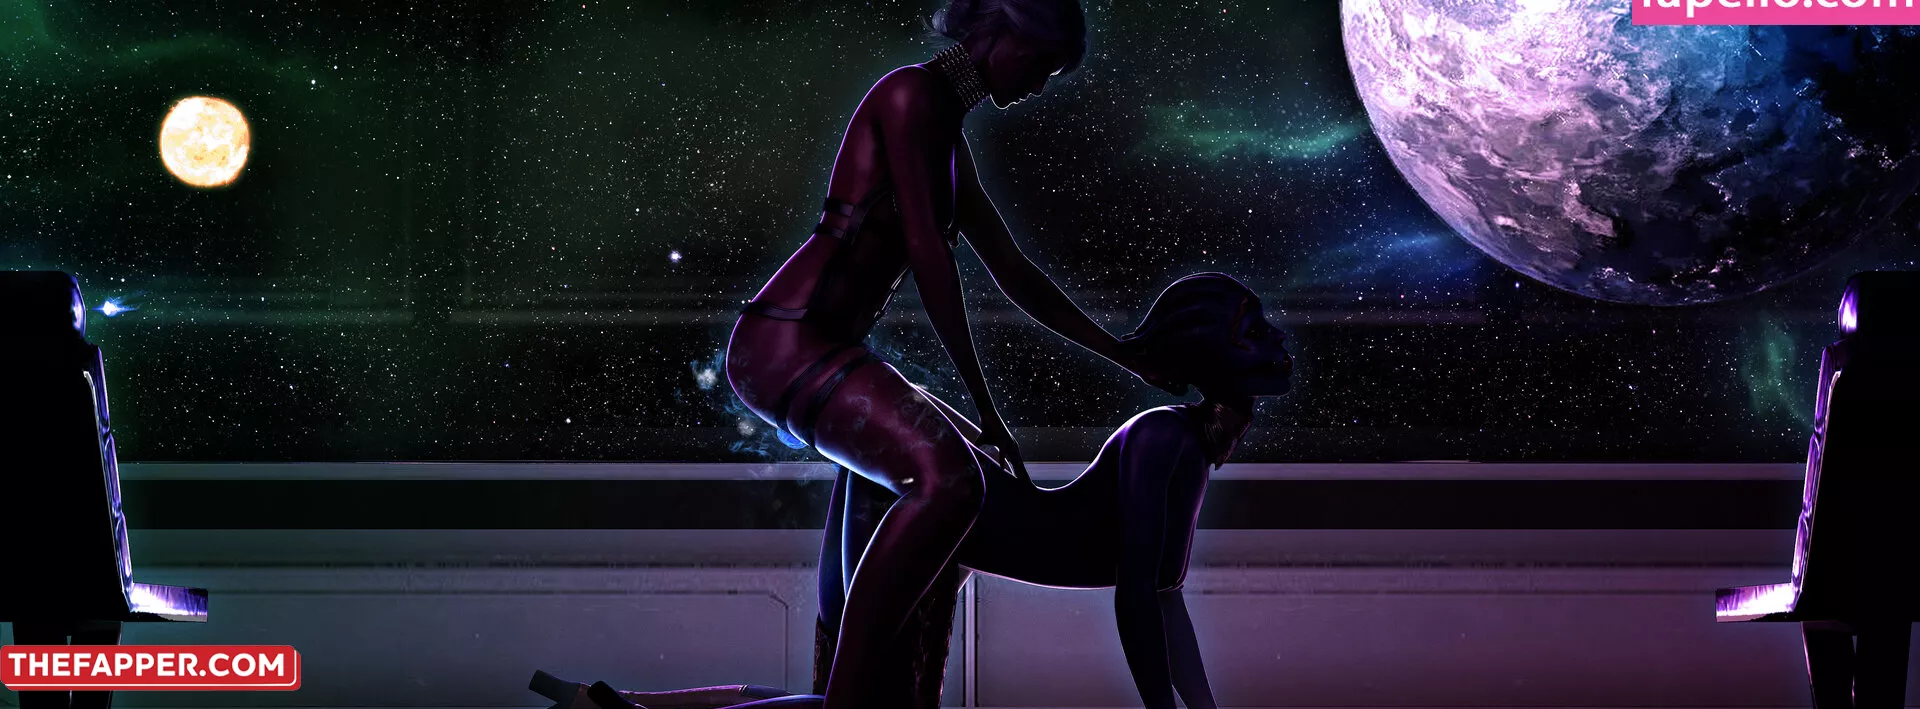 Mass Effect  Onlyfans Leaked Nude Image #luLoMXGBEo